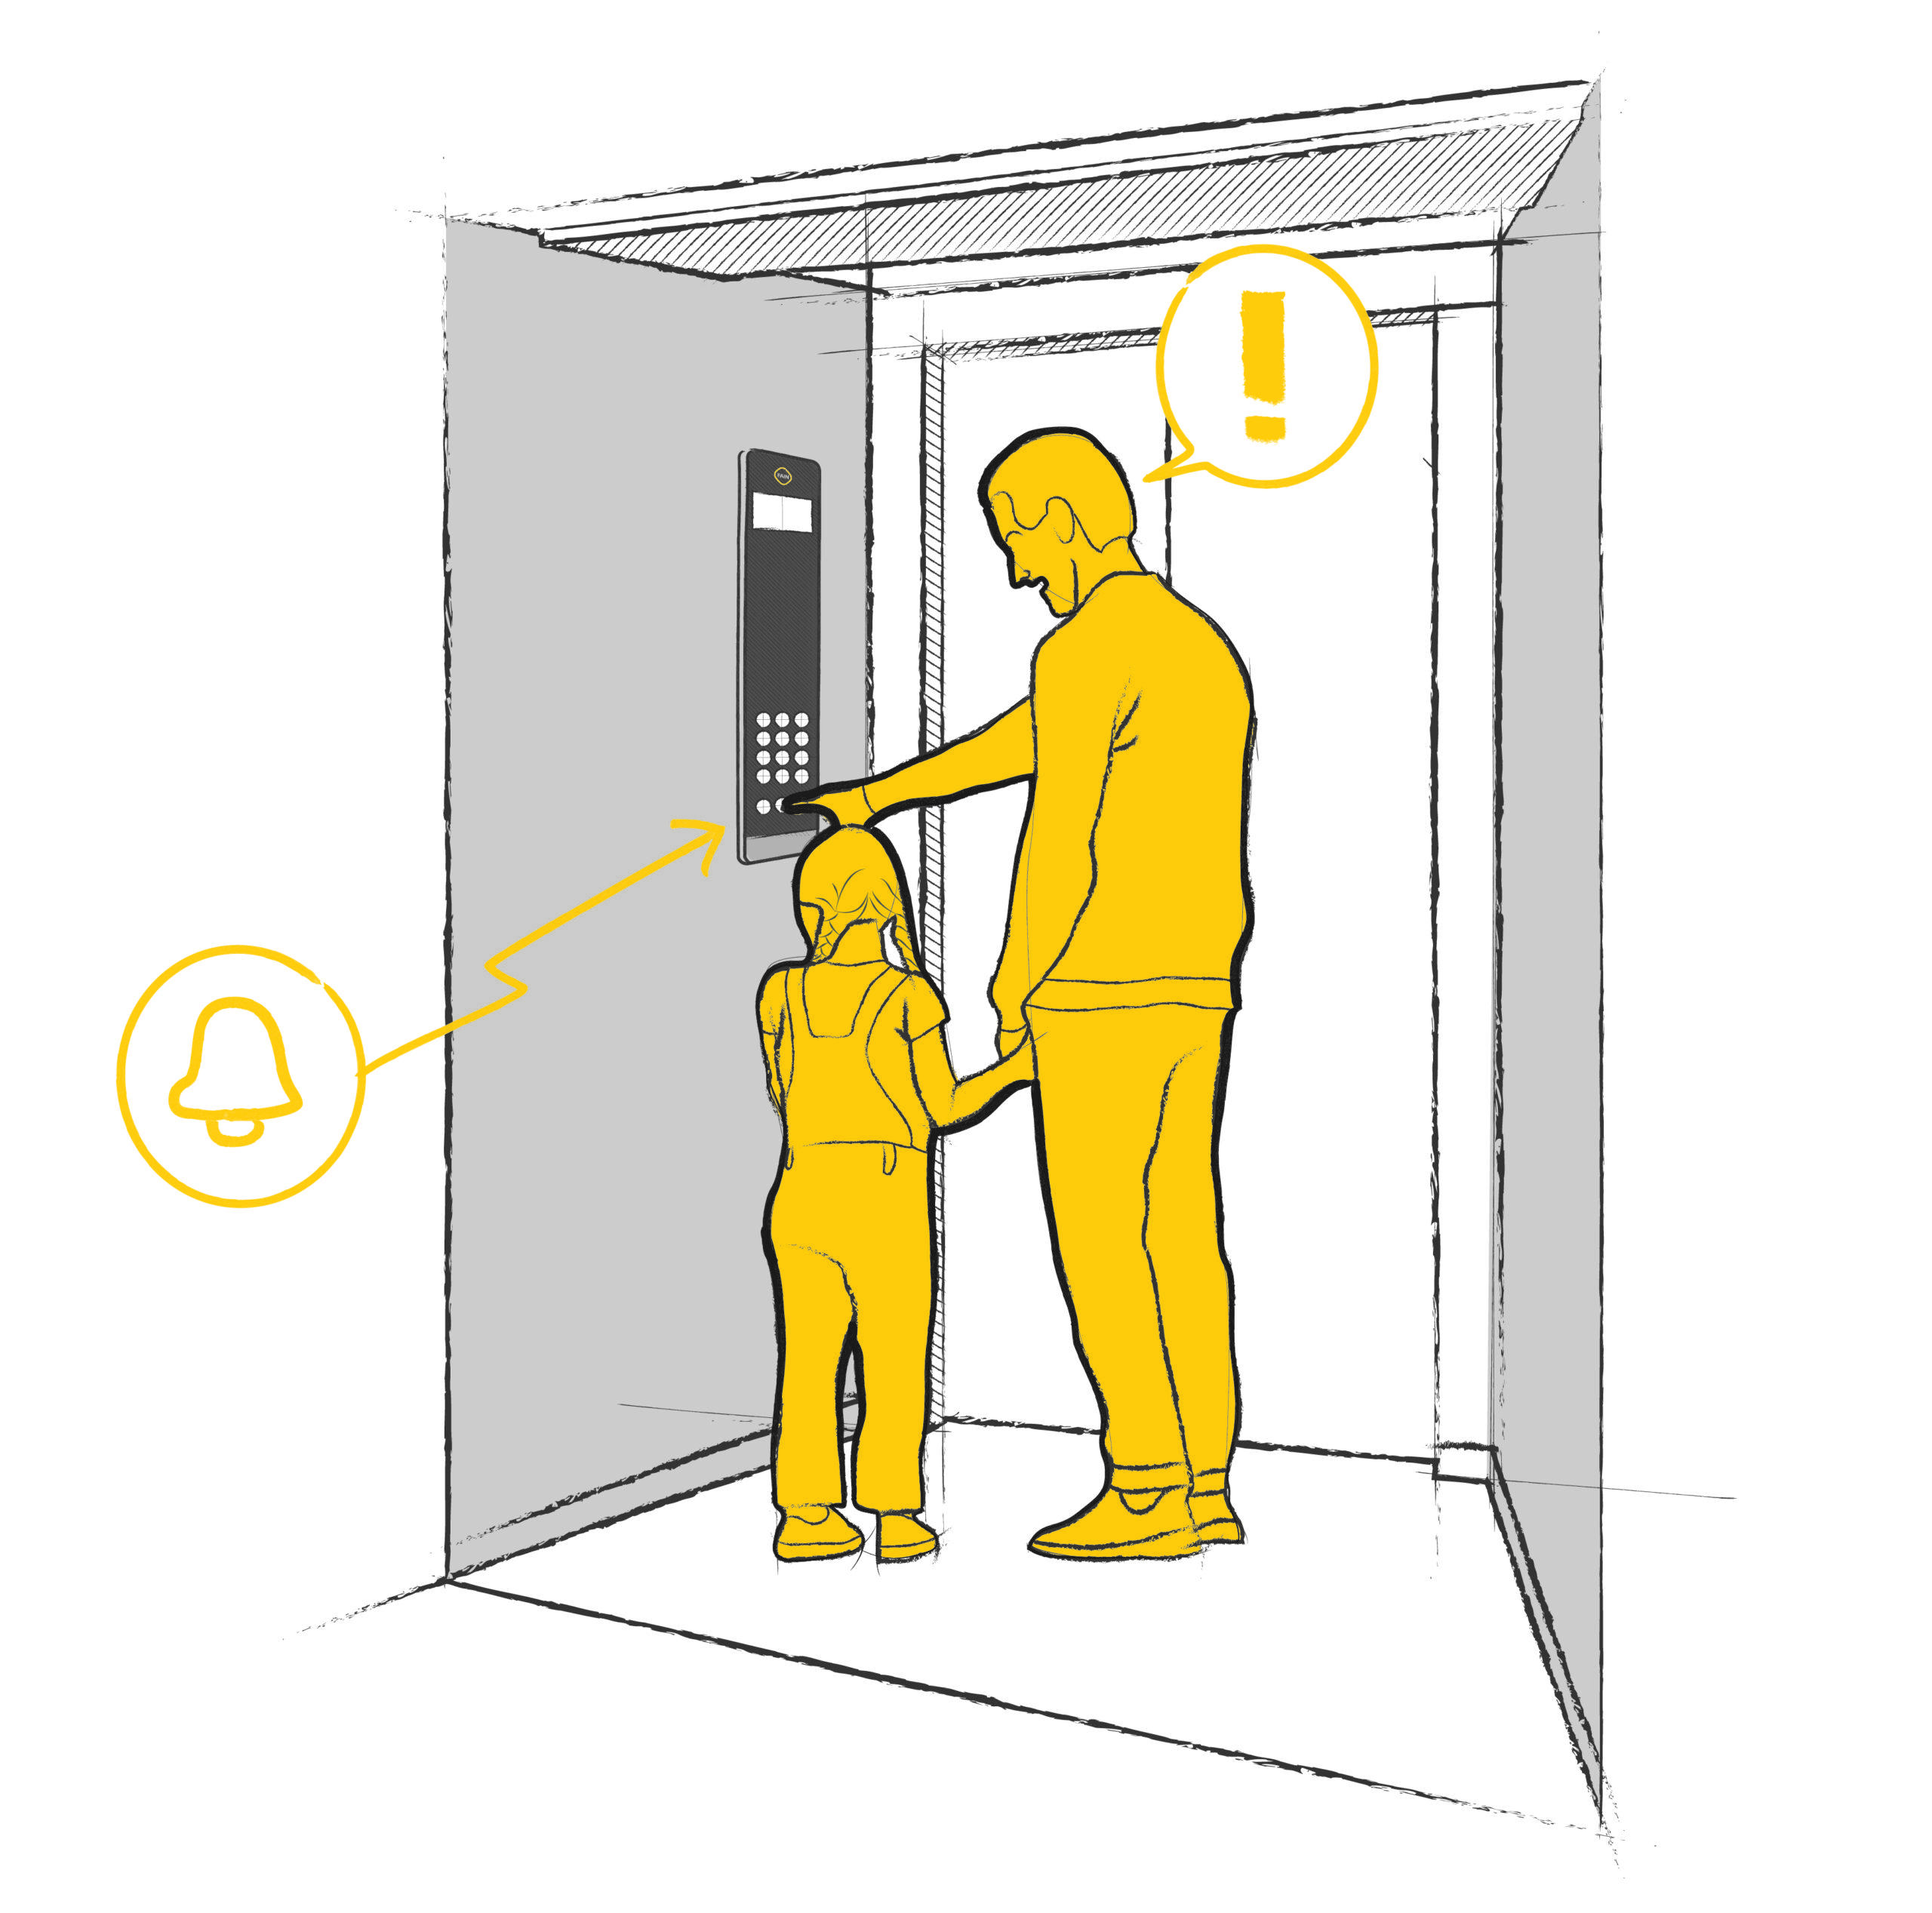 Enfant et adulte appuyant sur le bouton d'appel d'urgence de l'ascenseur